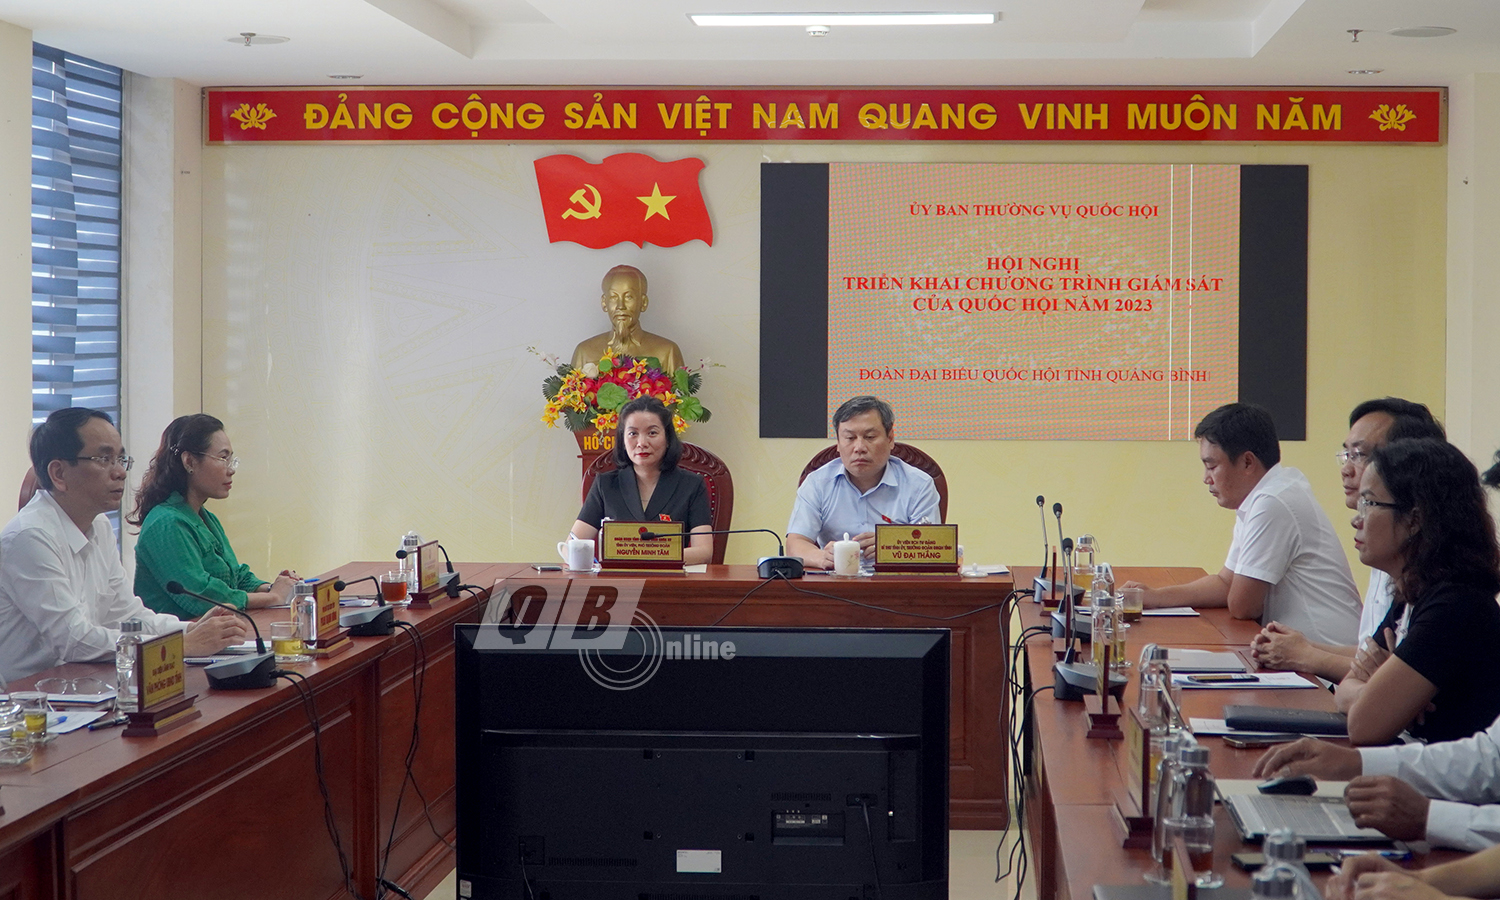 Toàn cảnh hội nghị tại điểu cầu tỉnh Quảng Bình